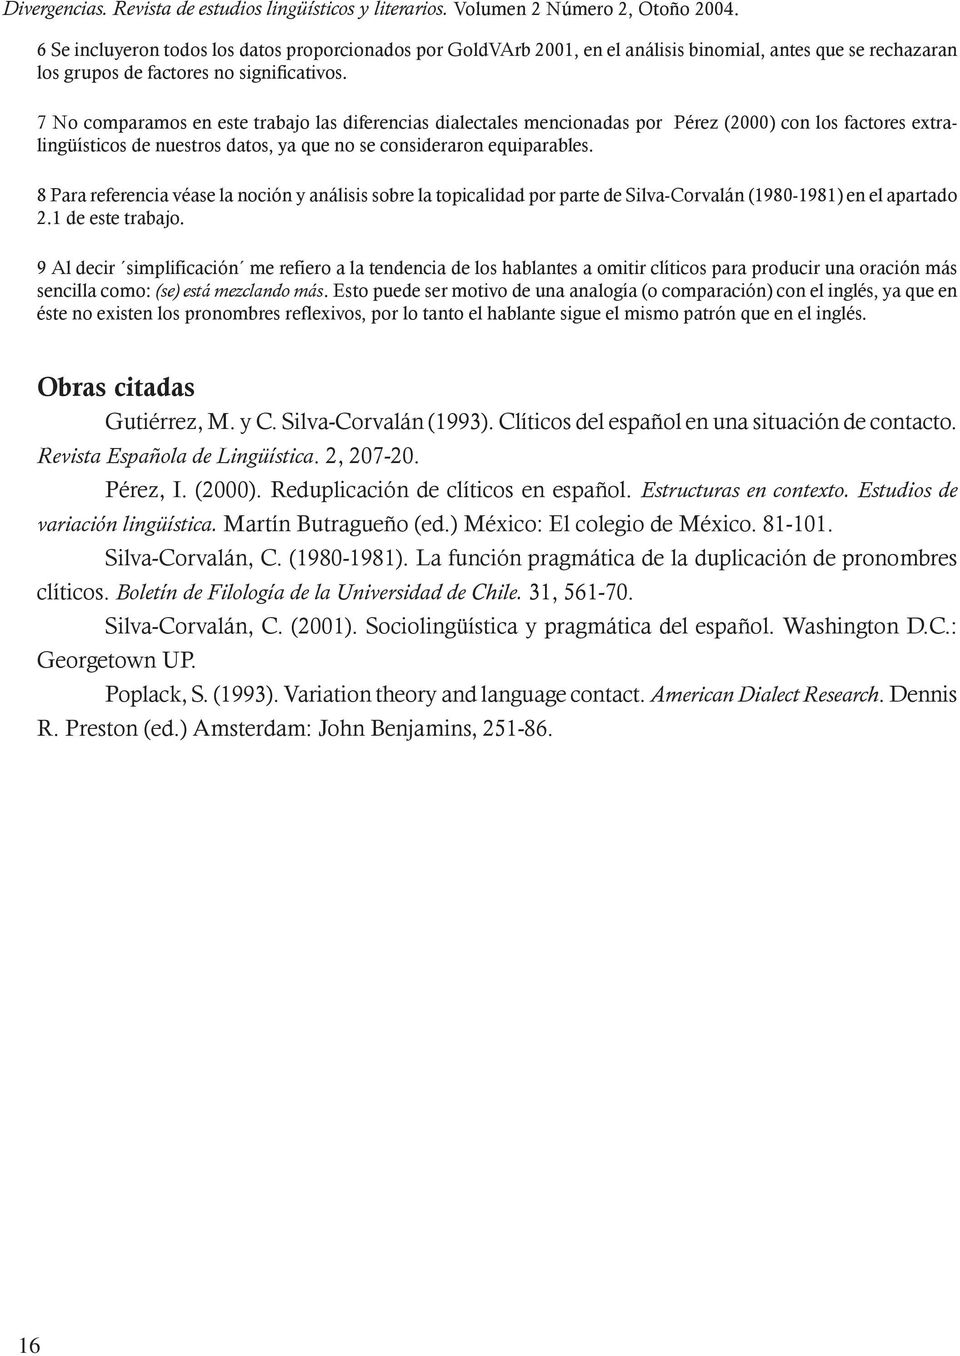 7 No comparamos en este trabajo las diferencias dialectales mencionadas por Pérez (2000) con los factores extralingüísticos de nuestros datos, ya que no se consideraron equiparables.